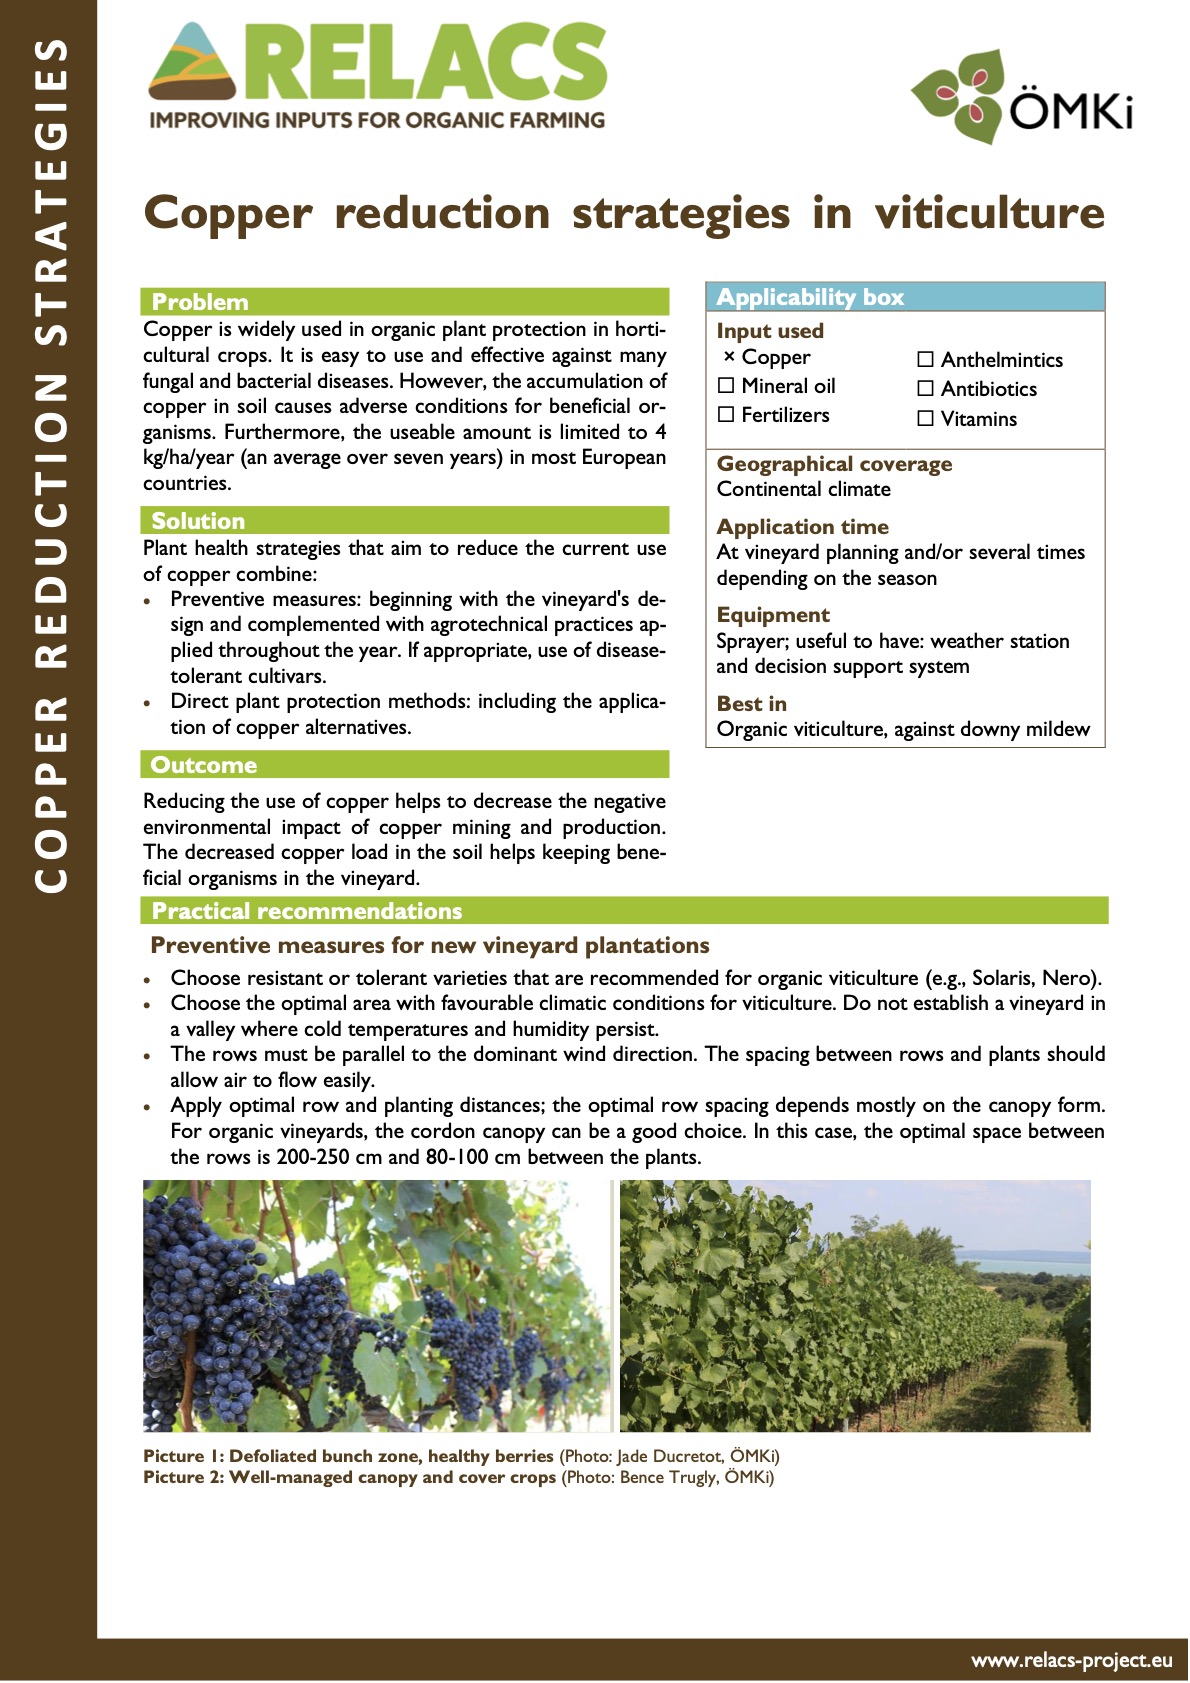 Strategien zur Kupferreduzierung im Weinbau (RELACS Practice Abstract)